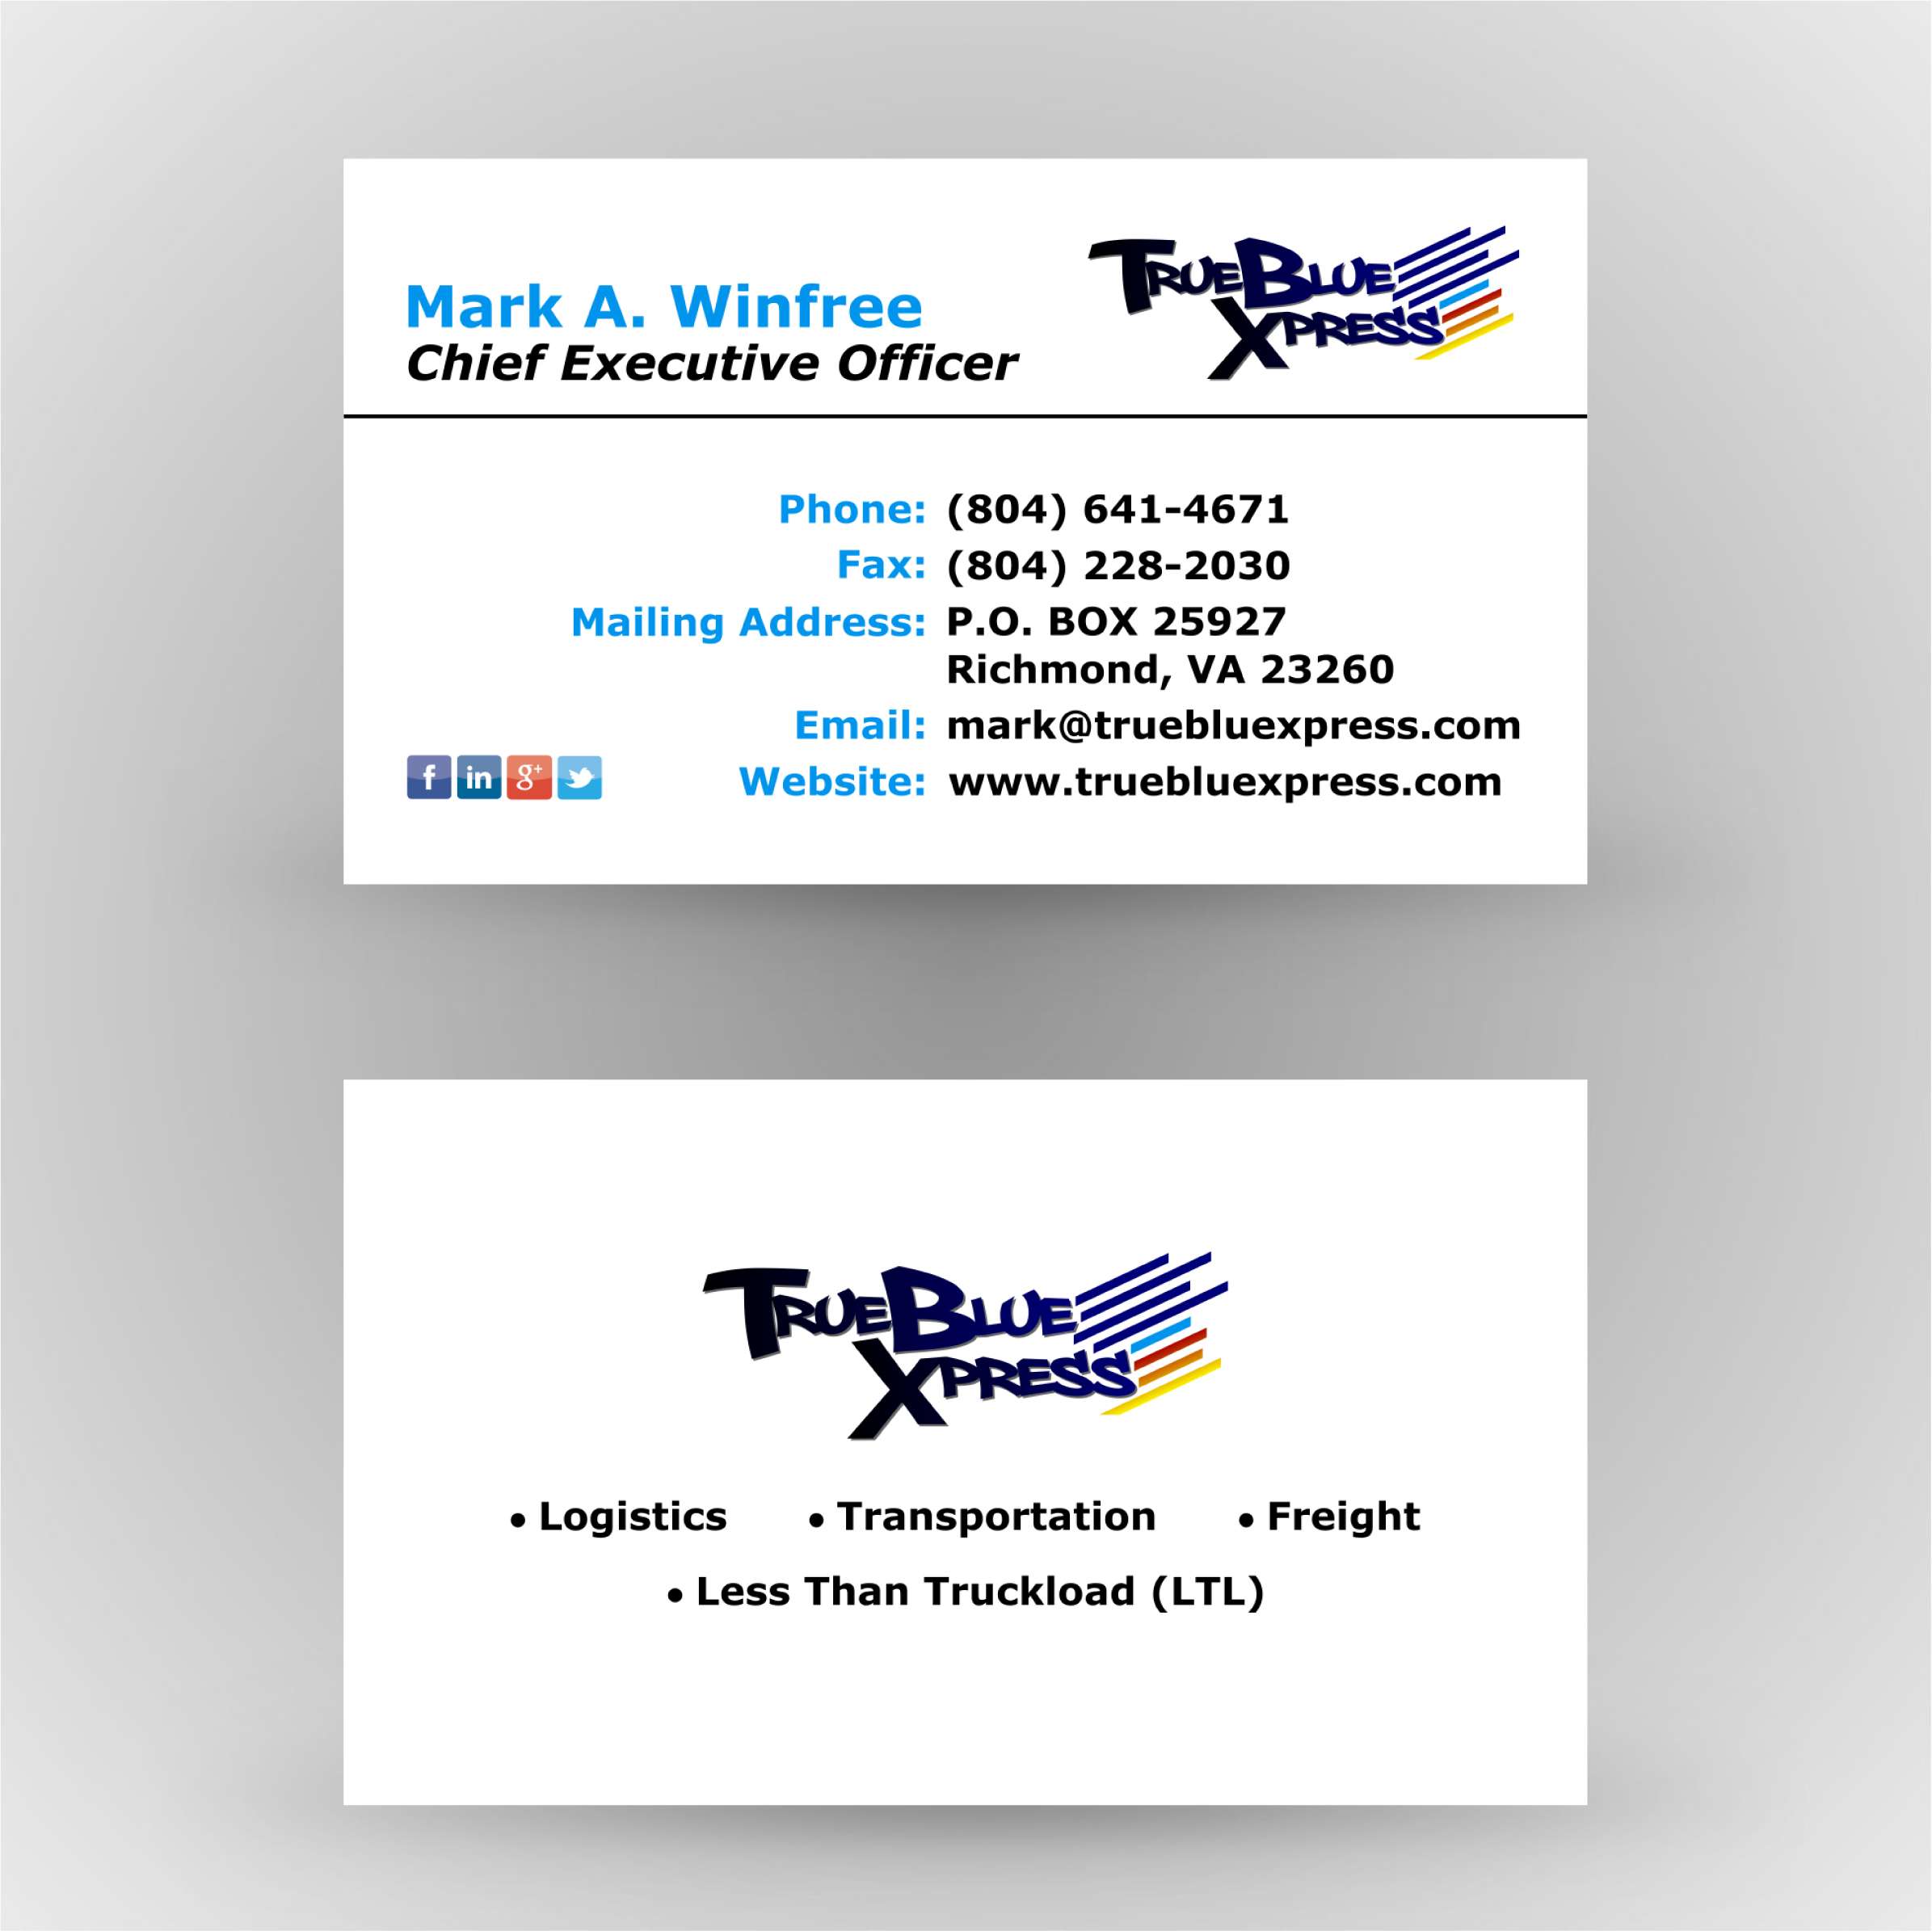 TrueBlue Xpress - Business Cards